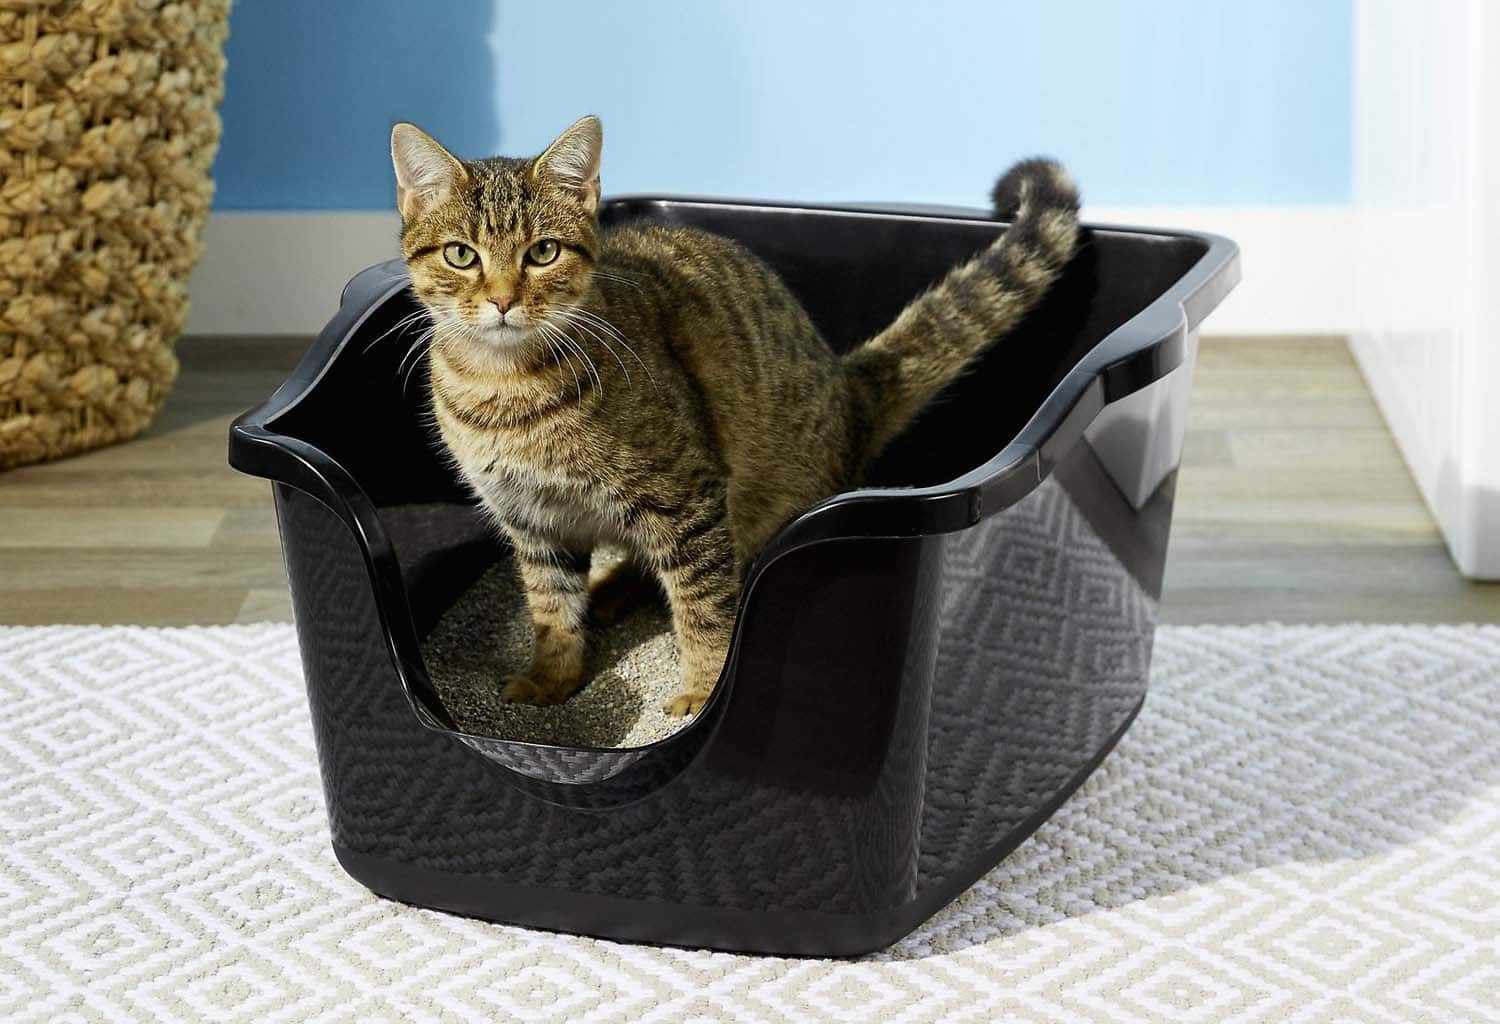 덮힌 쓰레기 상자와 덮지 않은 쓰레기 상자:내 고양이는 신경을 쓰나요?